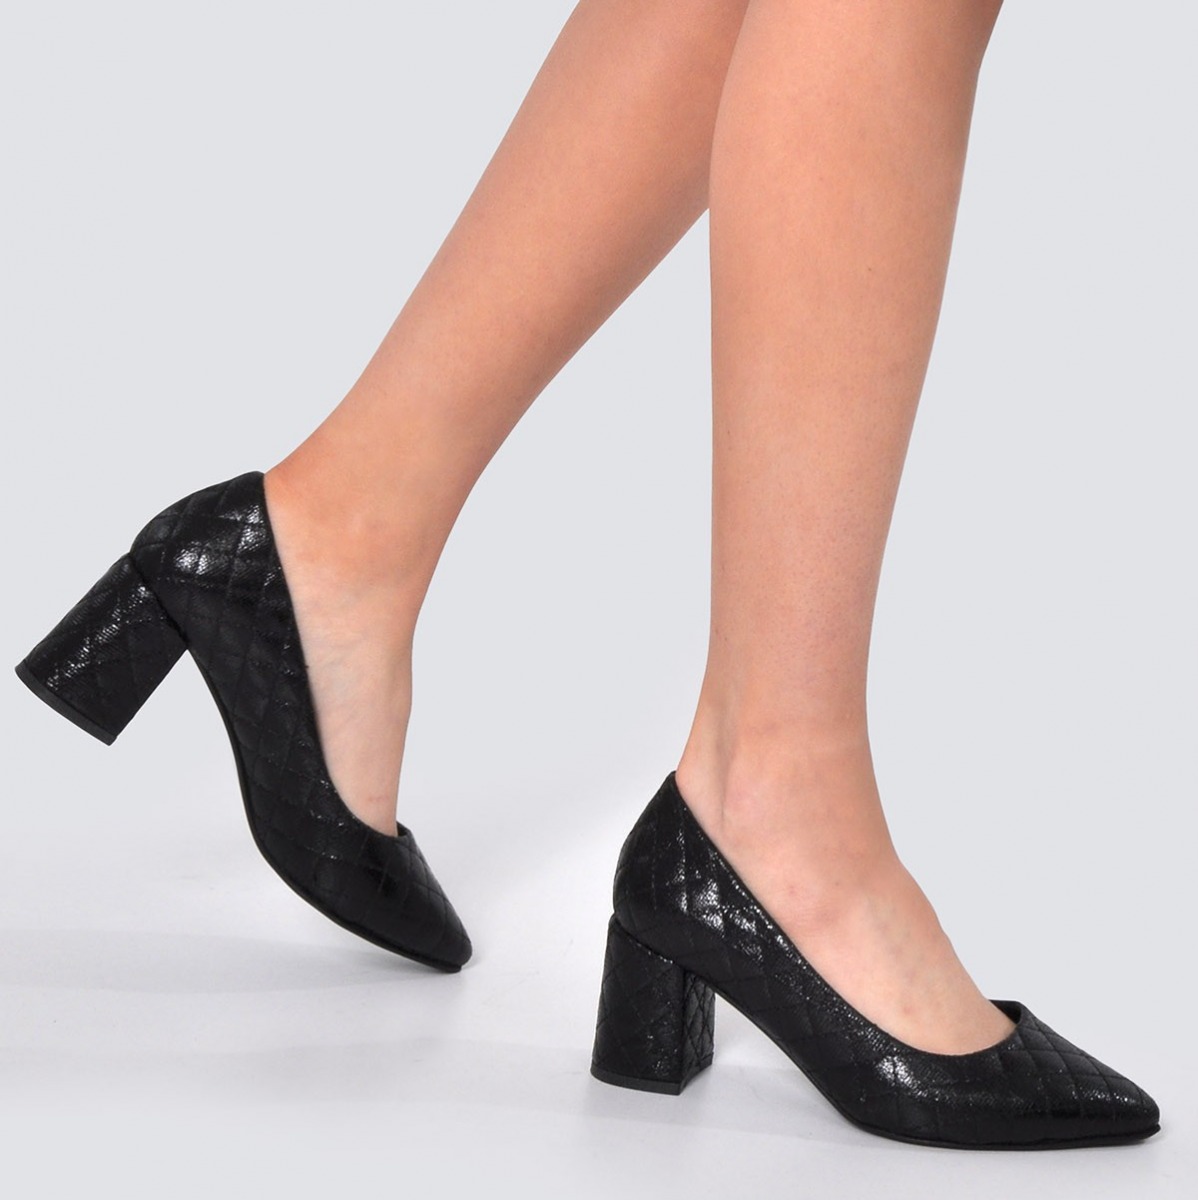 Flo Kadın Siyah Parlak Kapitone Klasik Topuklu Ayakkabı VZN21-042Y. 3